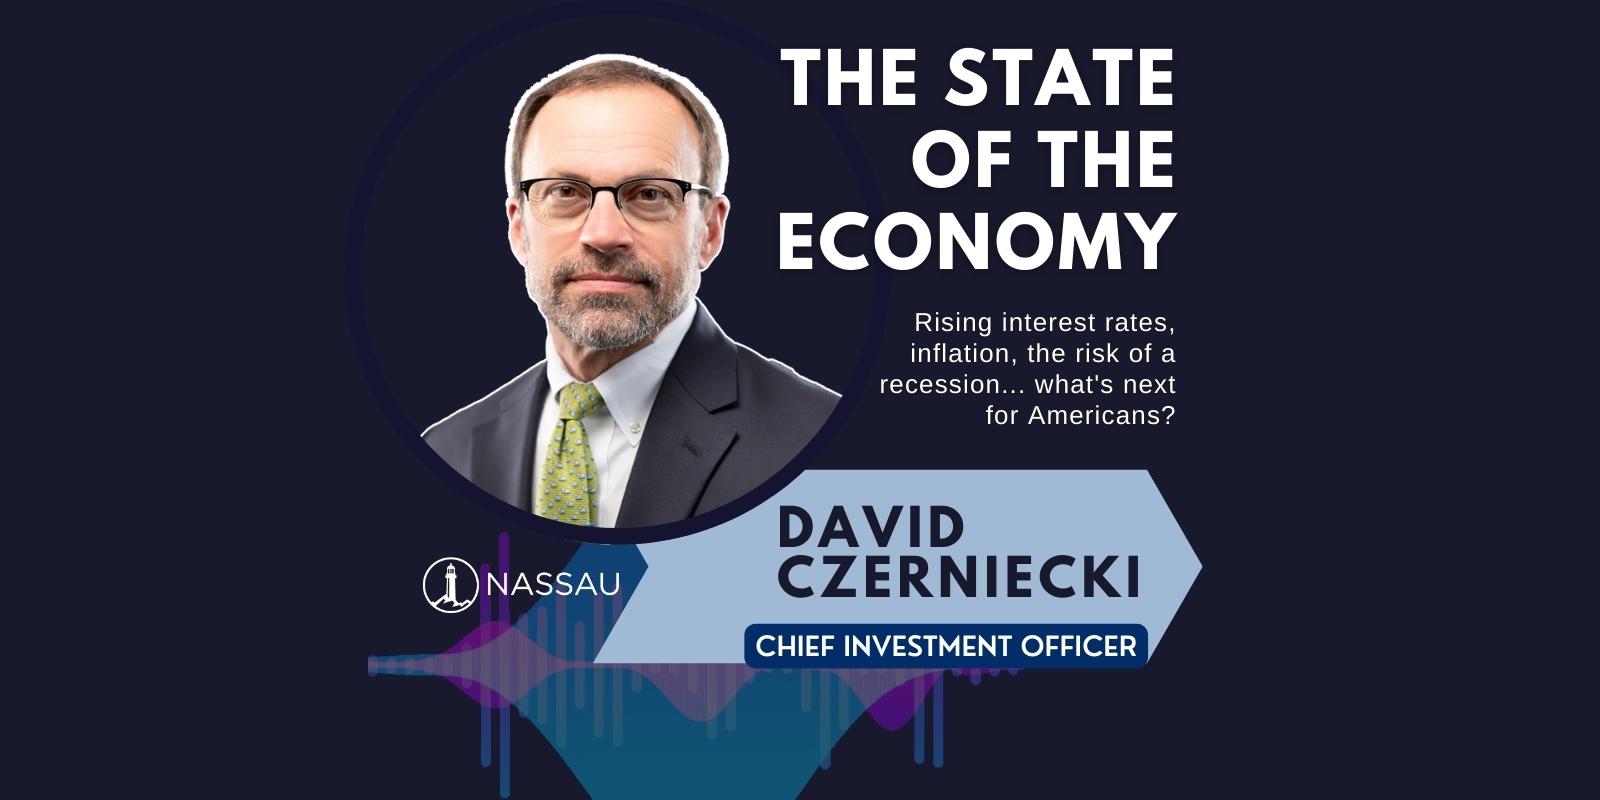 The State of the Economy with David Czerniecki